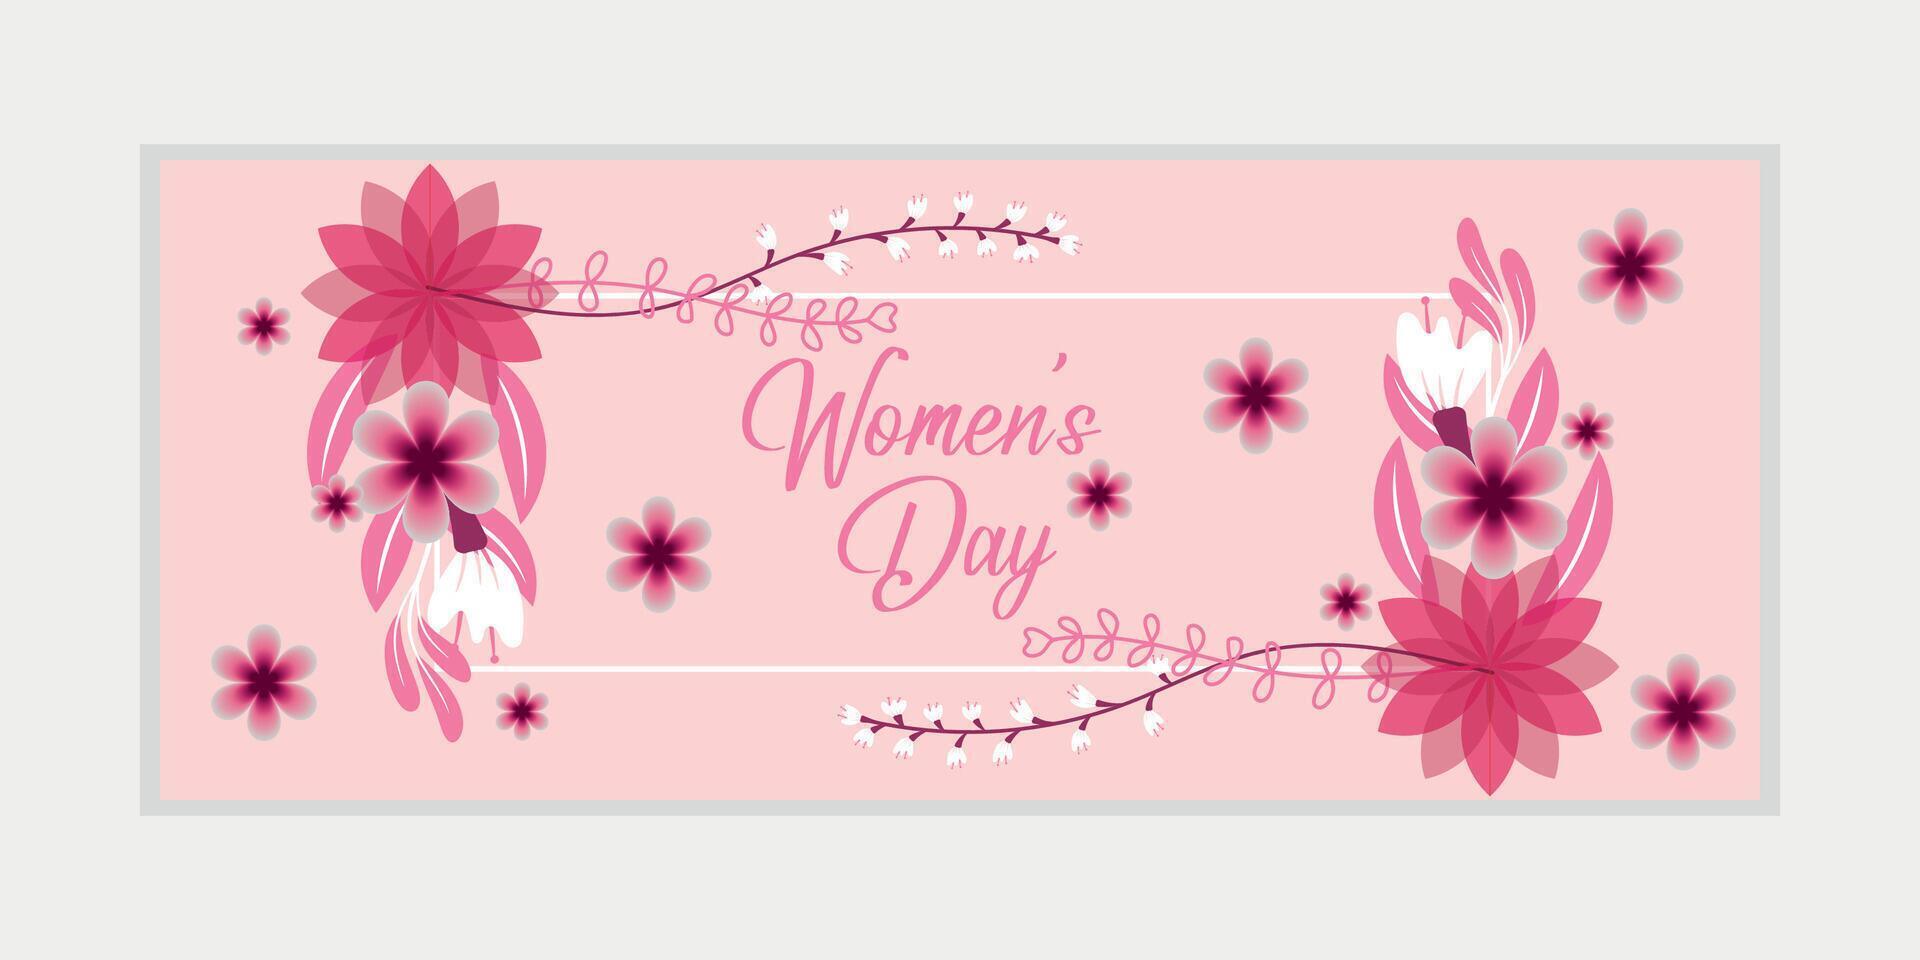 8 marzo, De las mujeres día saludo tarjeta y contento De las mujeres día bandera diseño, cartel, tarjeta, y póster diseño modelo con texto inscripción y estándar color, internacional De las mujeres día celebracion, vector